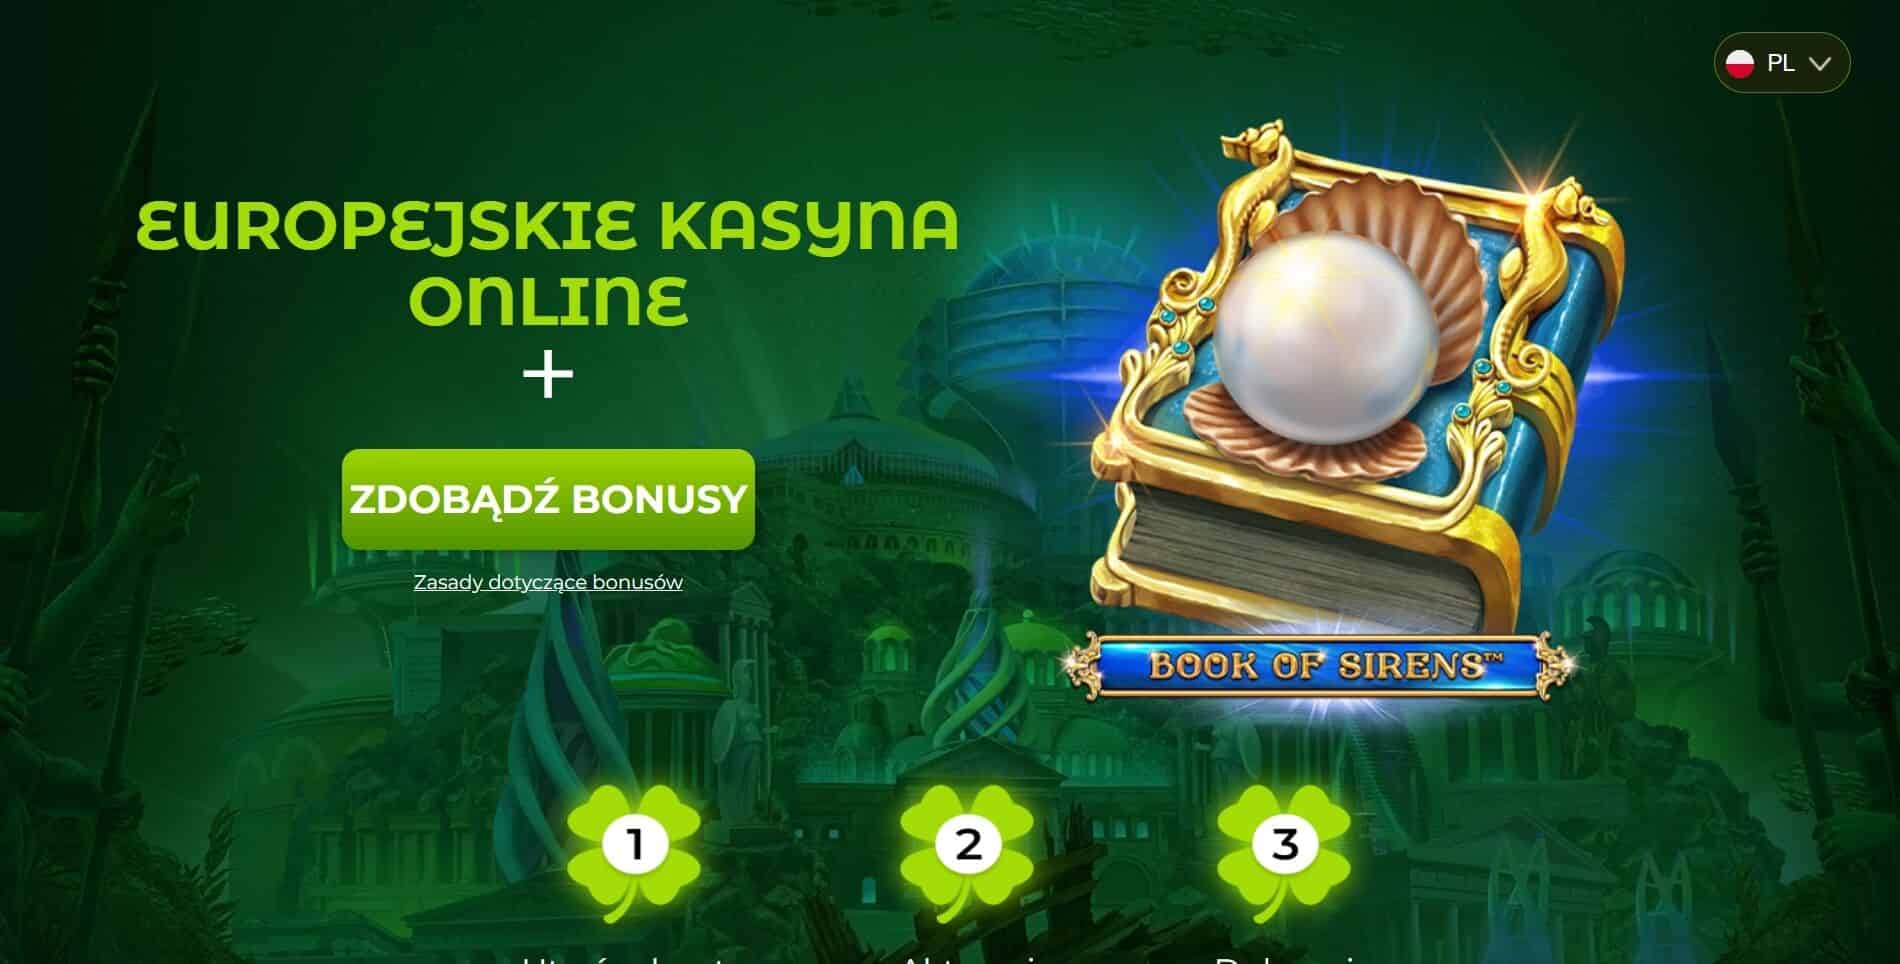 Budowanie relacji za pomocą legalne kasyna online w polsce